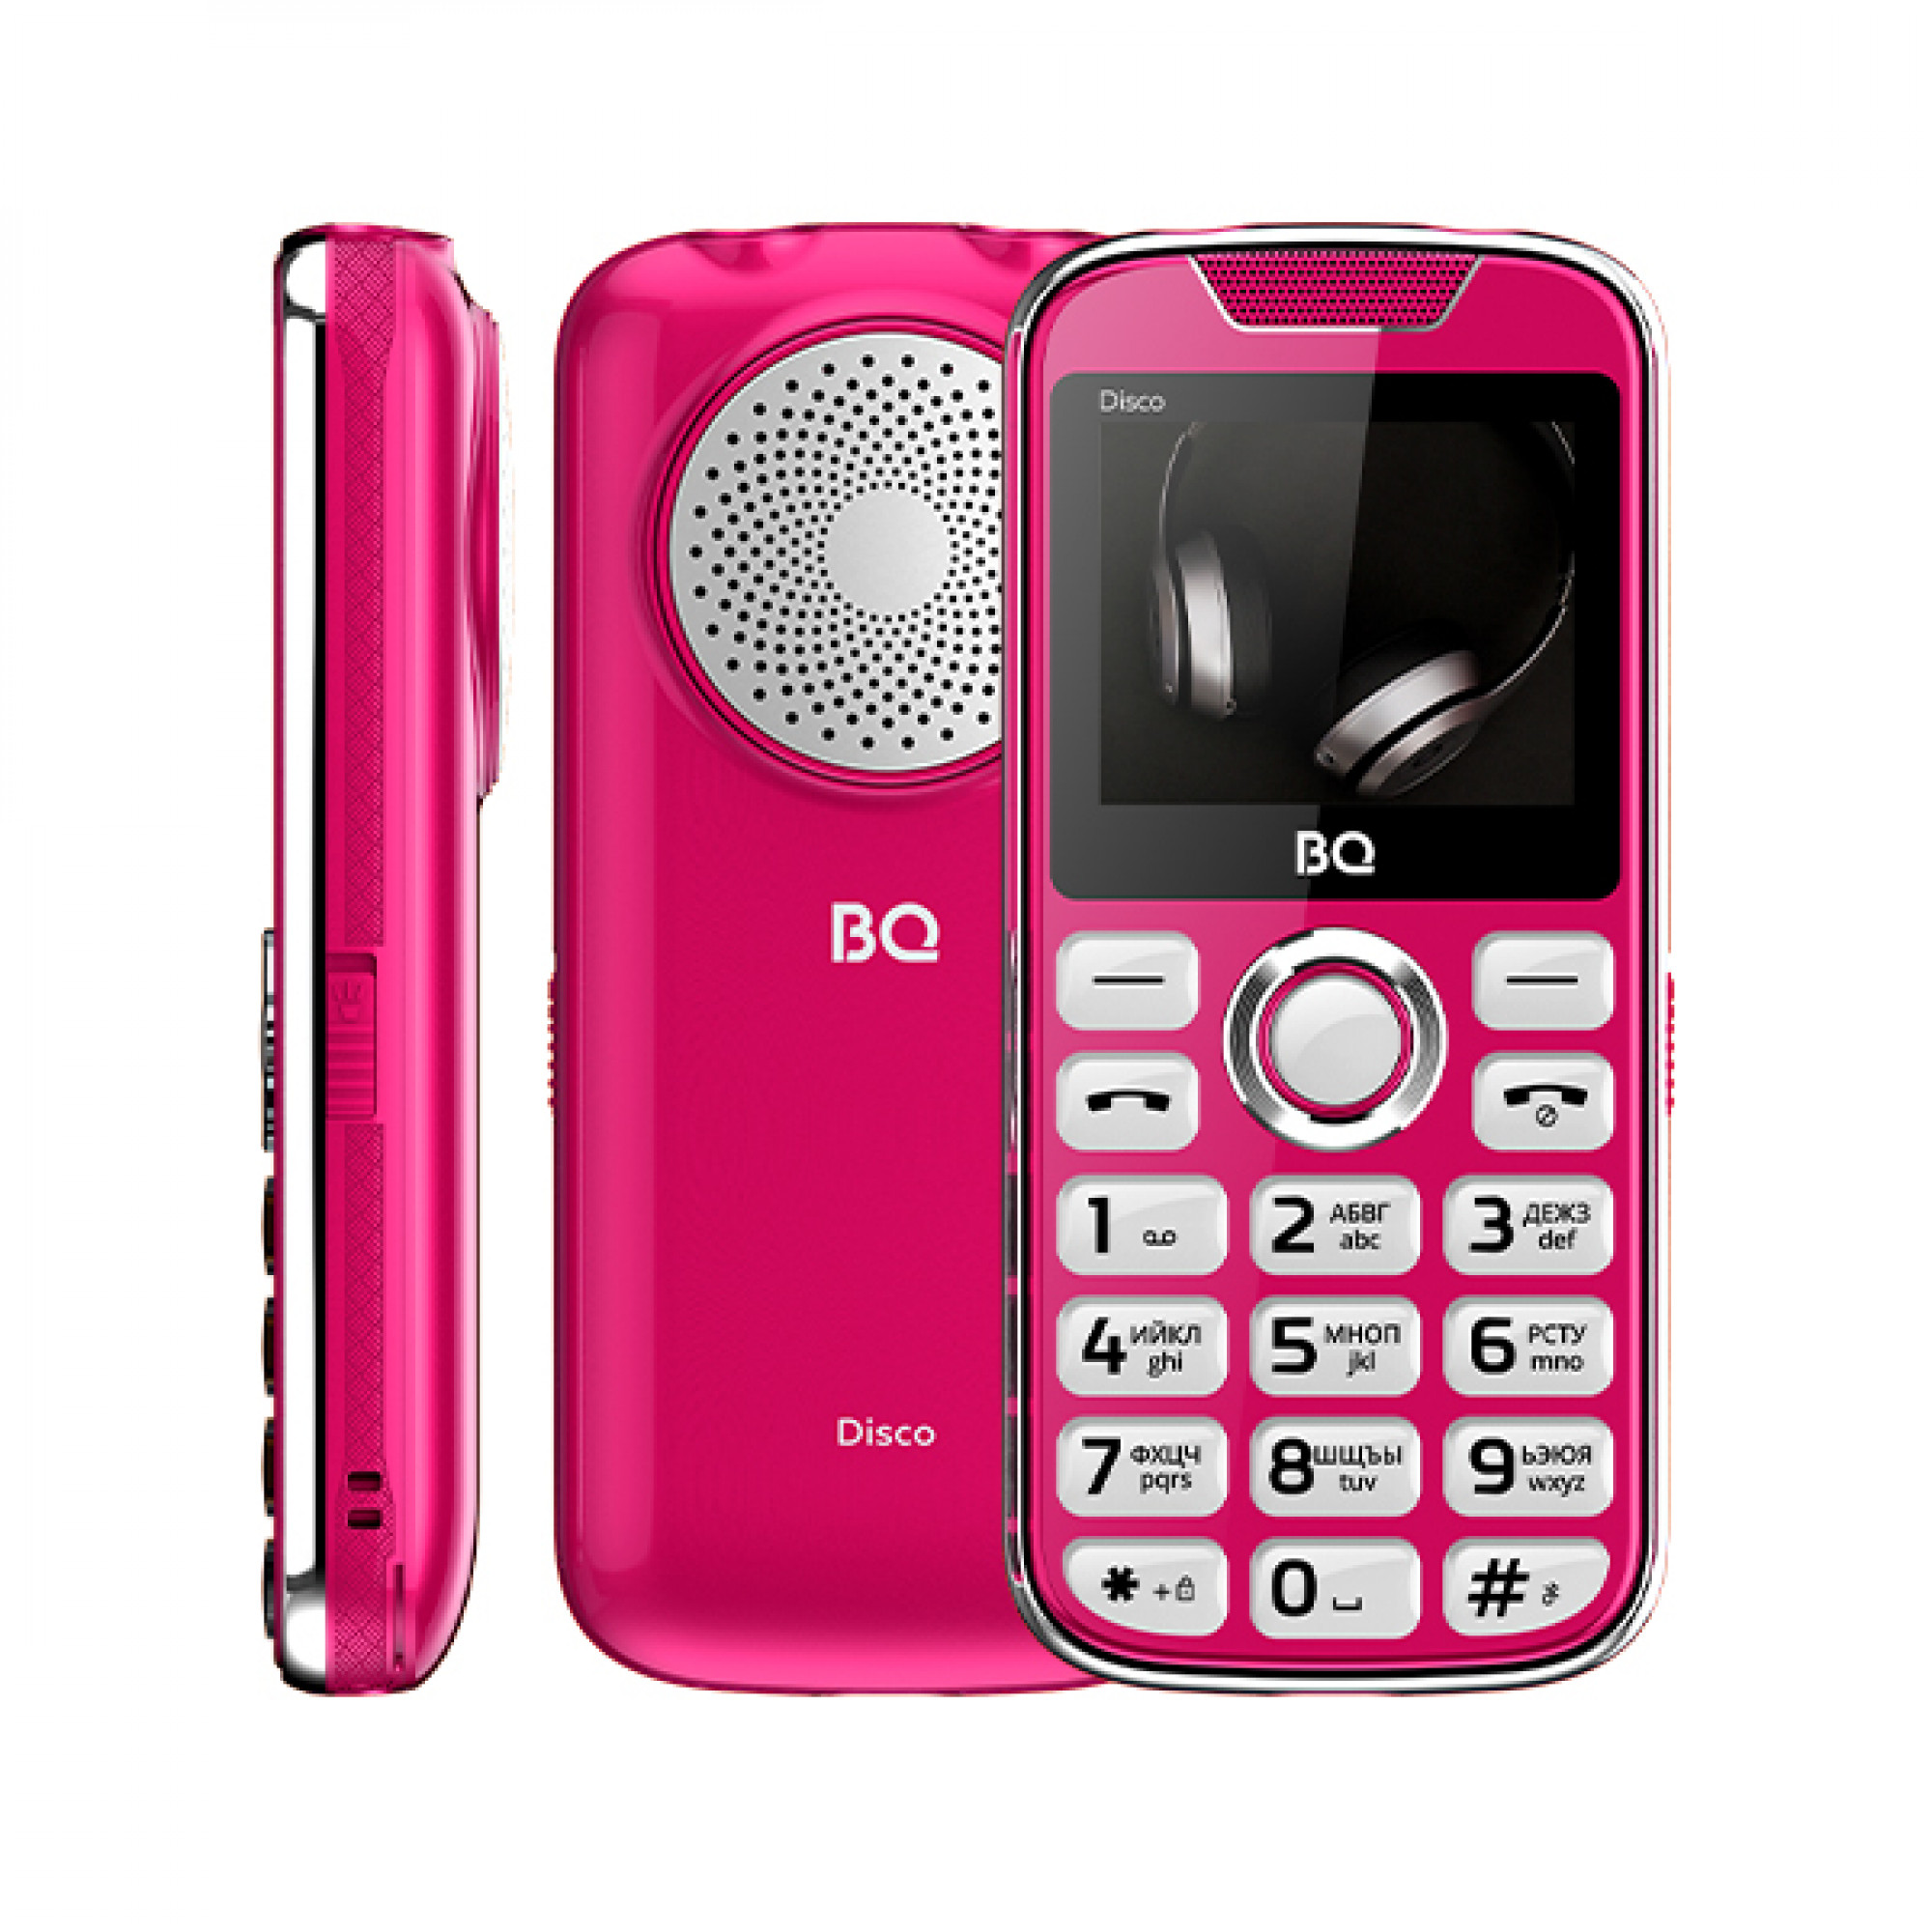 Мобильный телефон BQ BQ-2005 Disco (розовый)